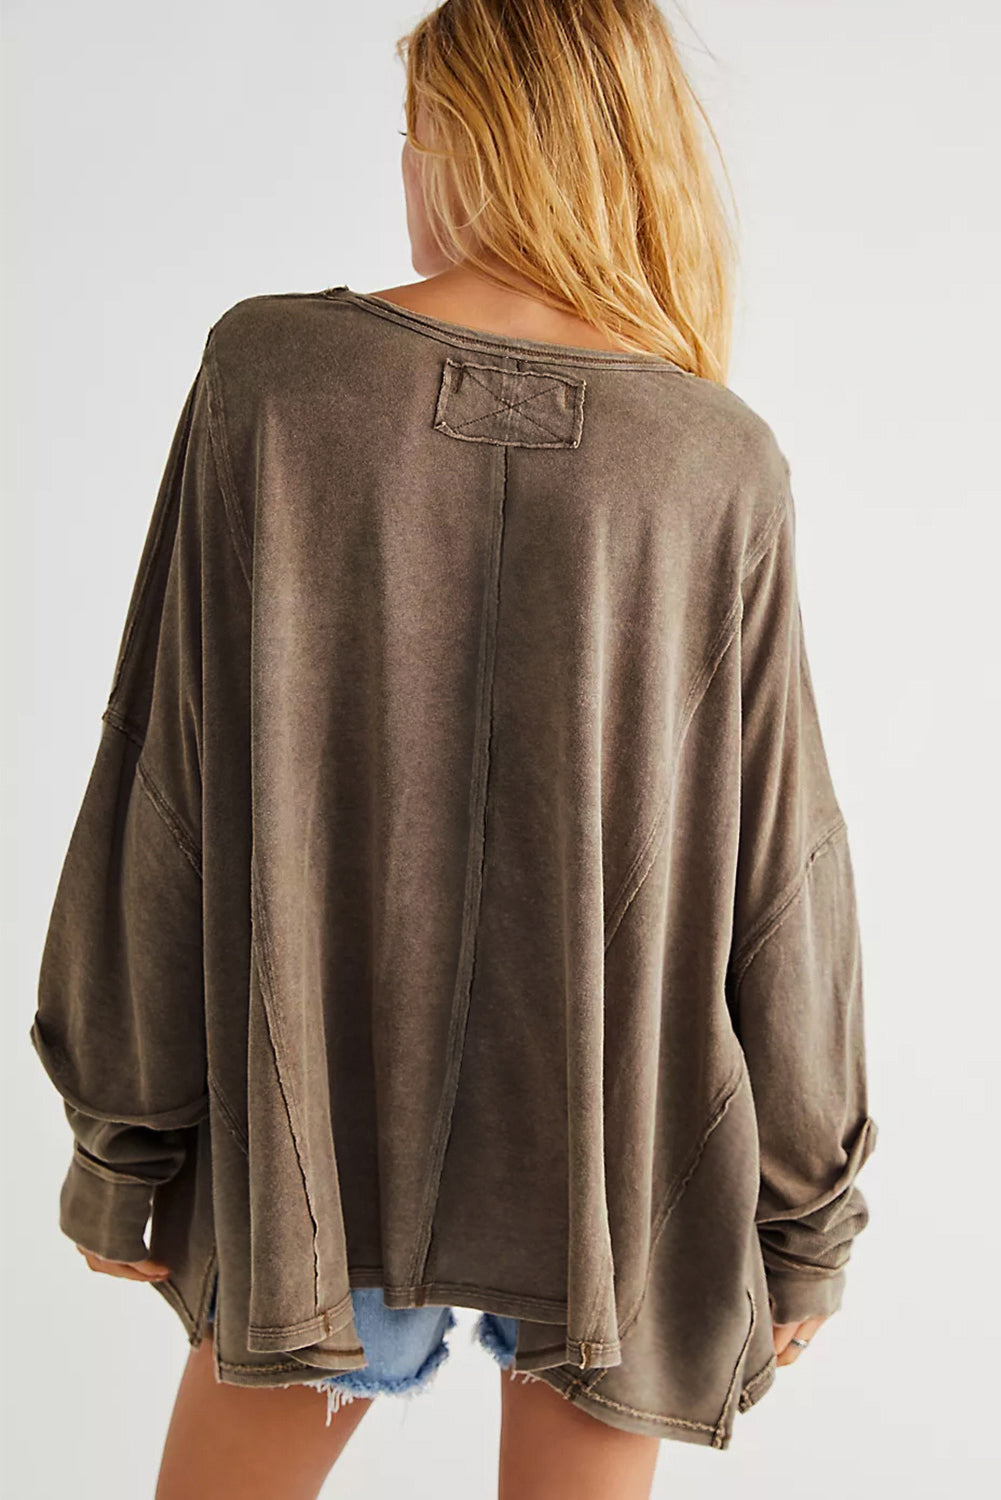 Rjav ohlapen pulover s spuščenimi rameni z odprtimi šivi